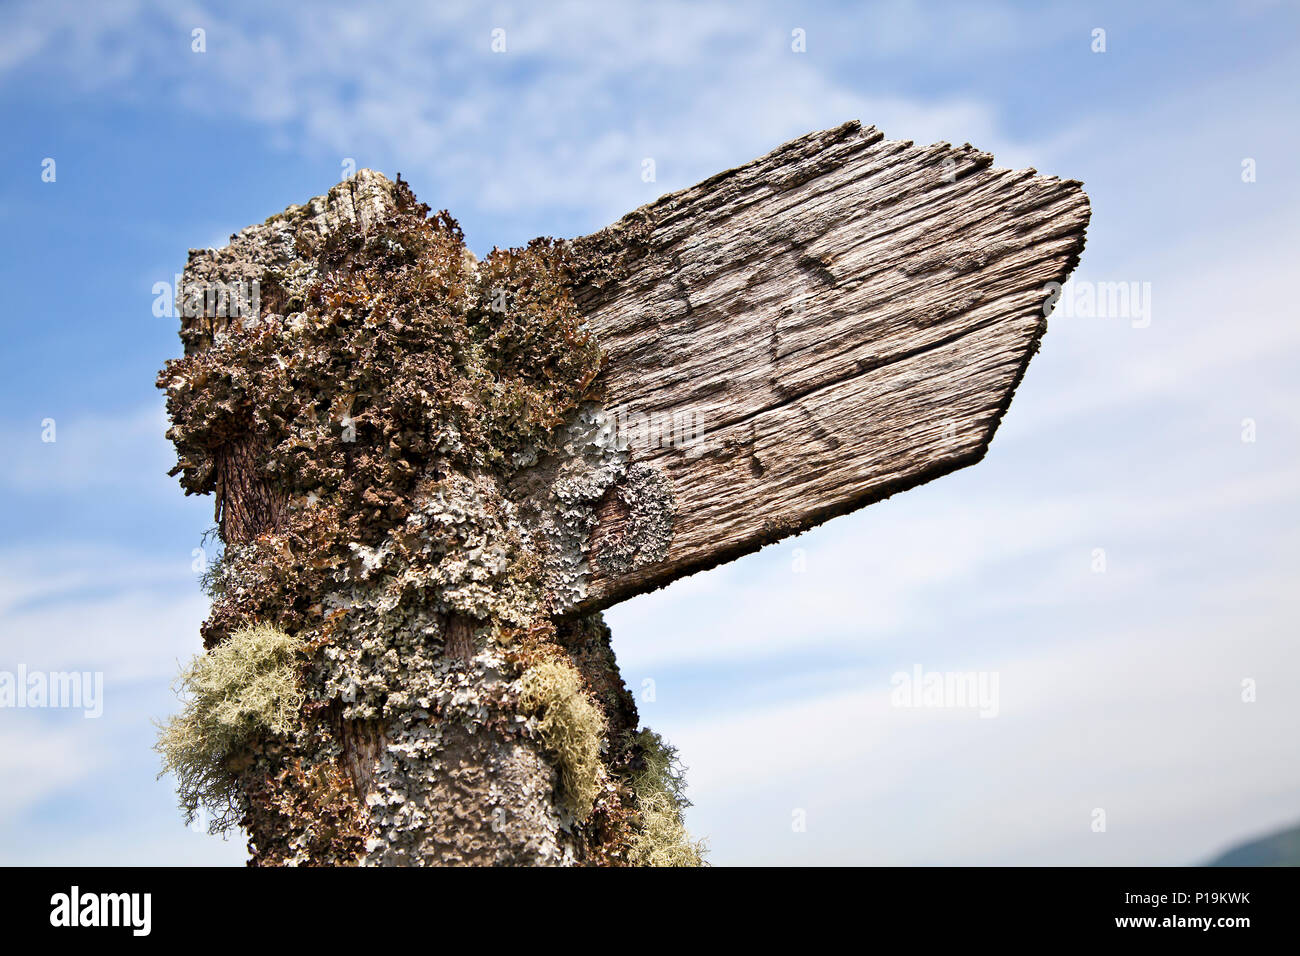 En bois ancien signe bridleway couverts de mousse et de lichen dans le parc national de Brecon Beacons, Pays de Galles, Royaume-Uni Banque D'Images